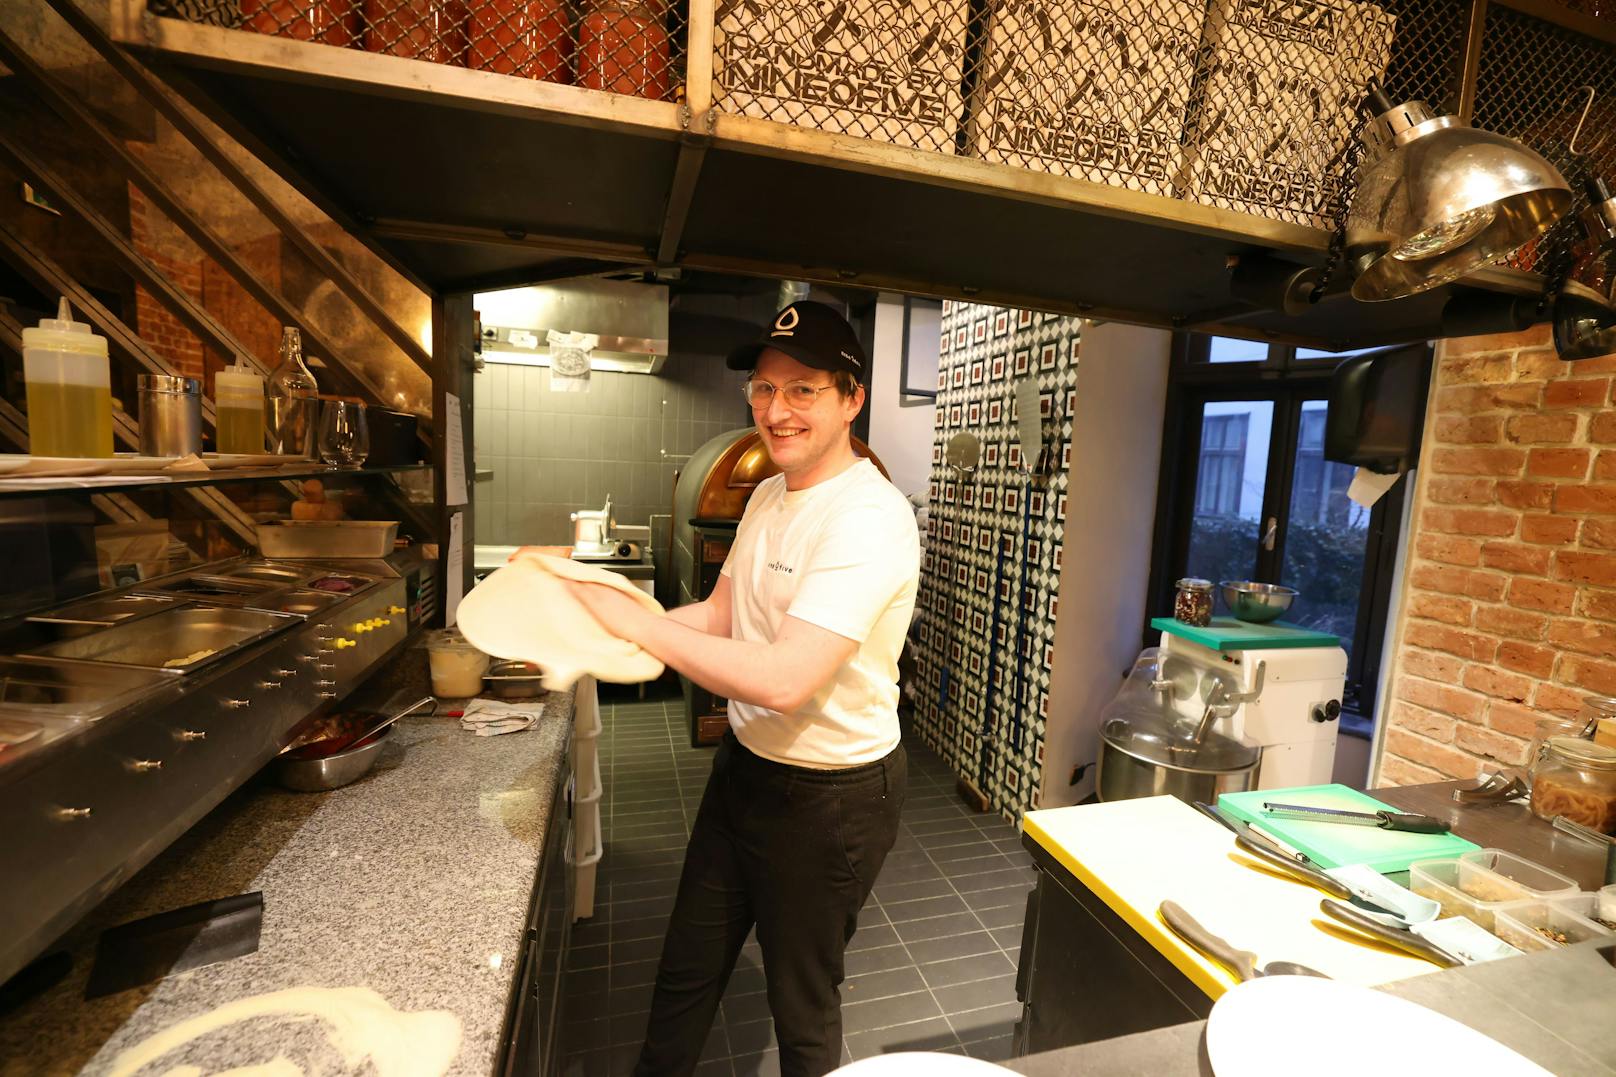 Der Küchenchef im NineOfive ist Antoine, er stammt aus Südfrankreich. In seiner Küche hat er originale Pizzaioli (Pizzabäcker) mit Napoli Diplom.